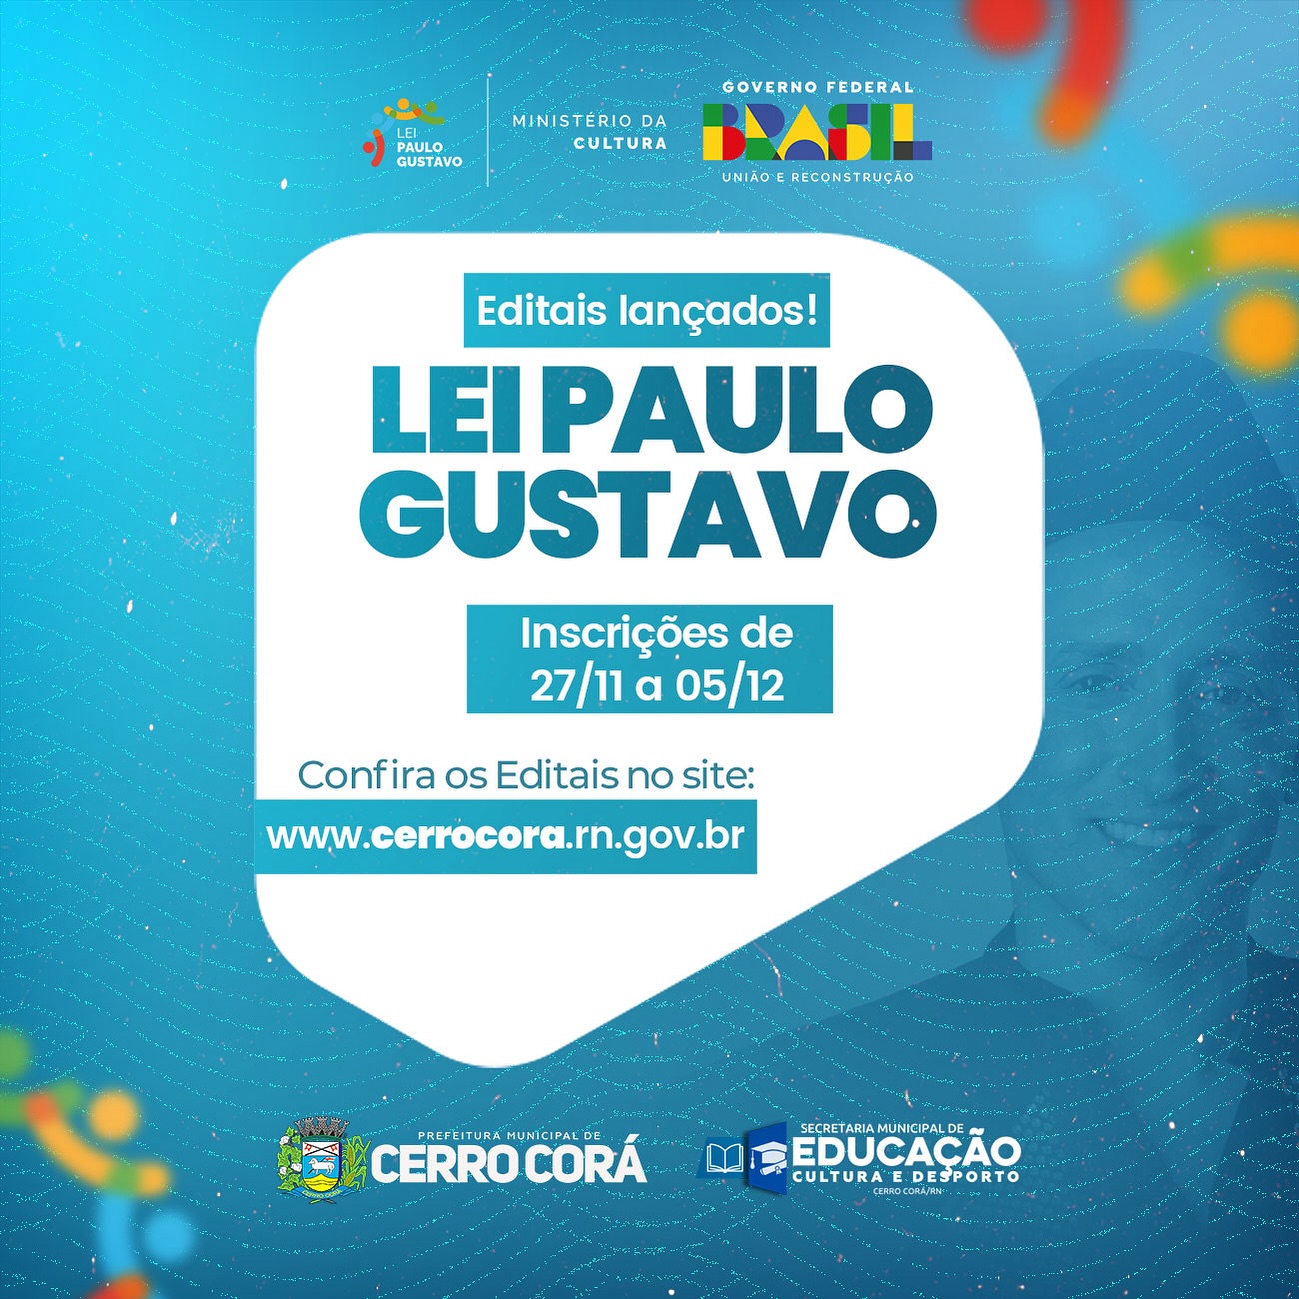 Prefeitura de Cerro Corá lança editais da Lei Paulo Gustavo para audiovisual e demais áreas da Cultura, confira: